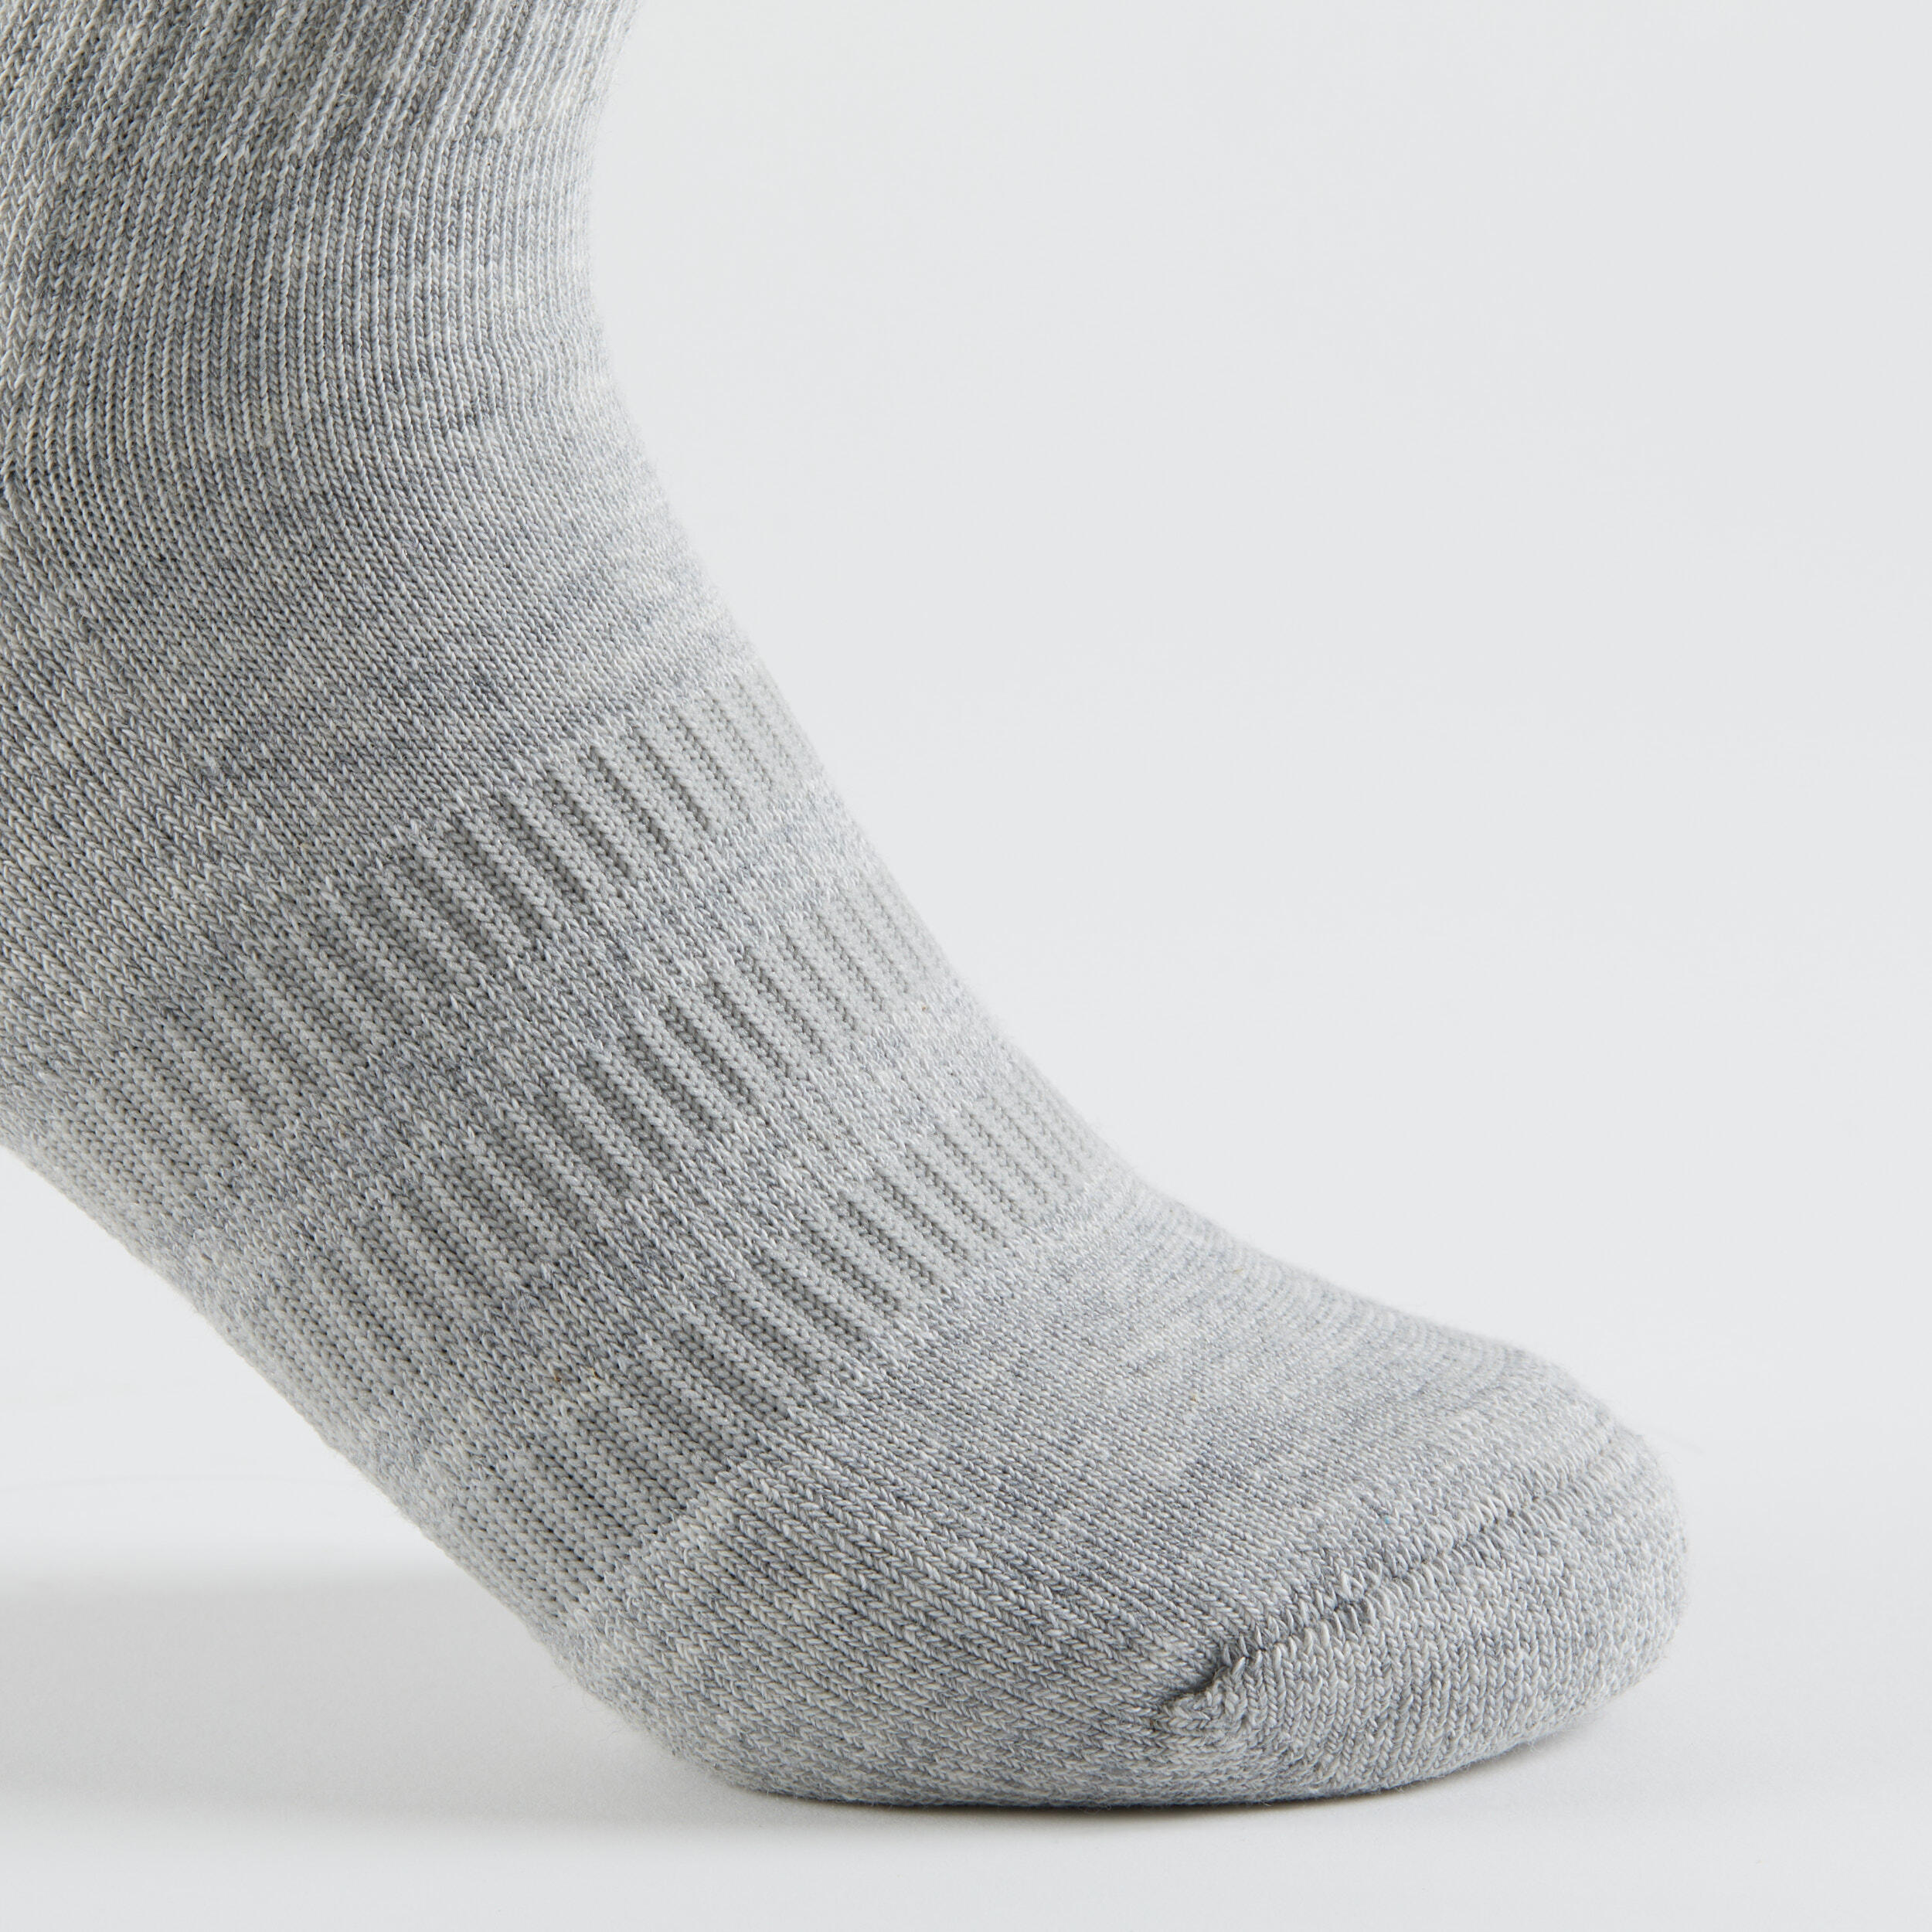 High Sports Socks Tri-Pack - Grey/White/Black 11/14